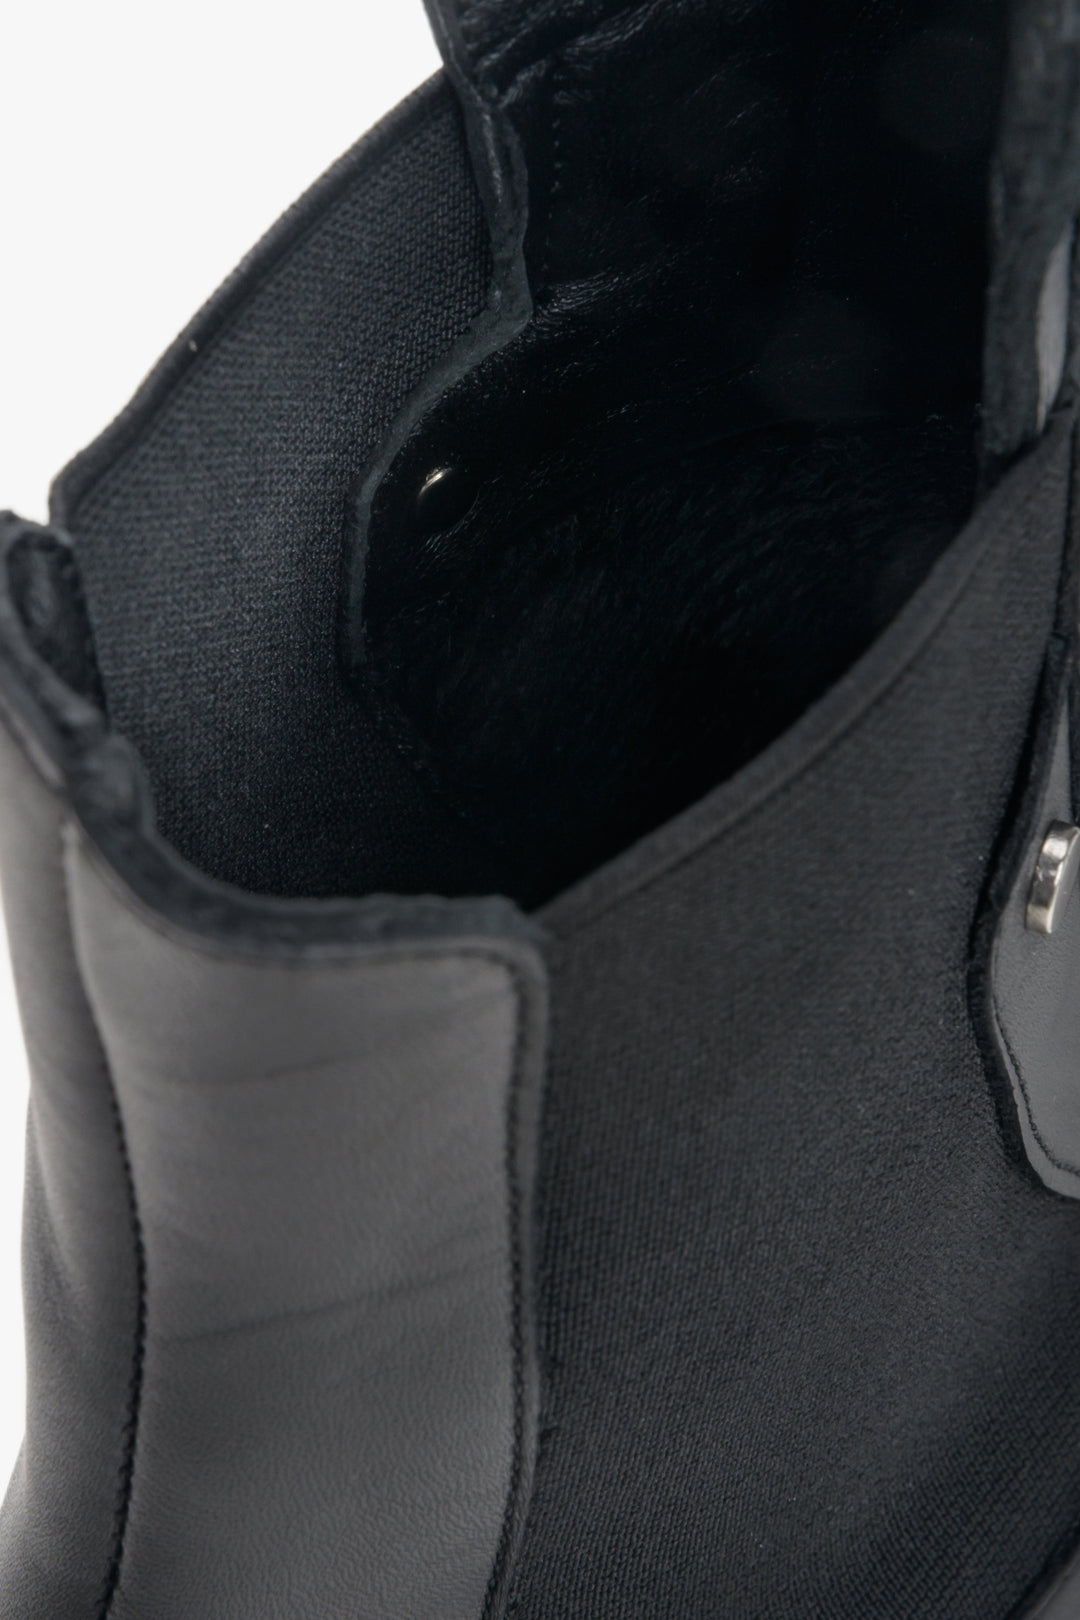 Skórzano-tekstylne czarne botki damskie Estro - zbliżenie na wnętrze buta.